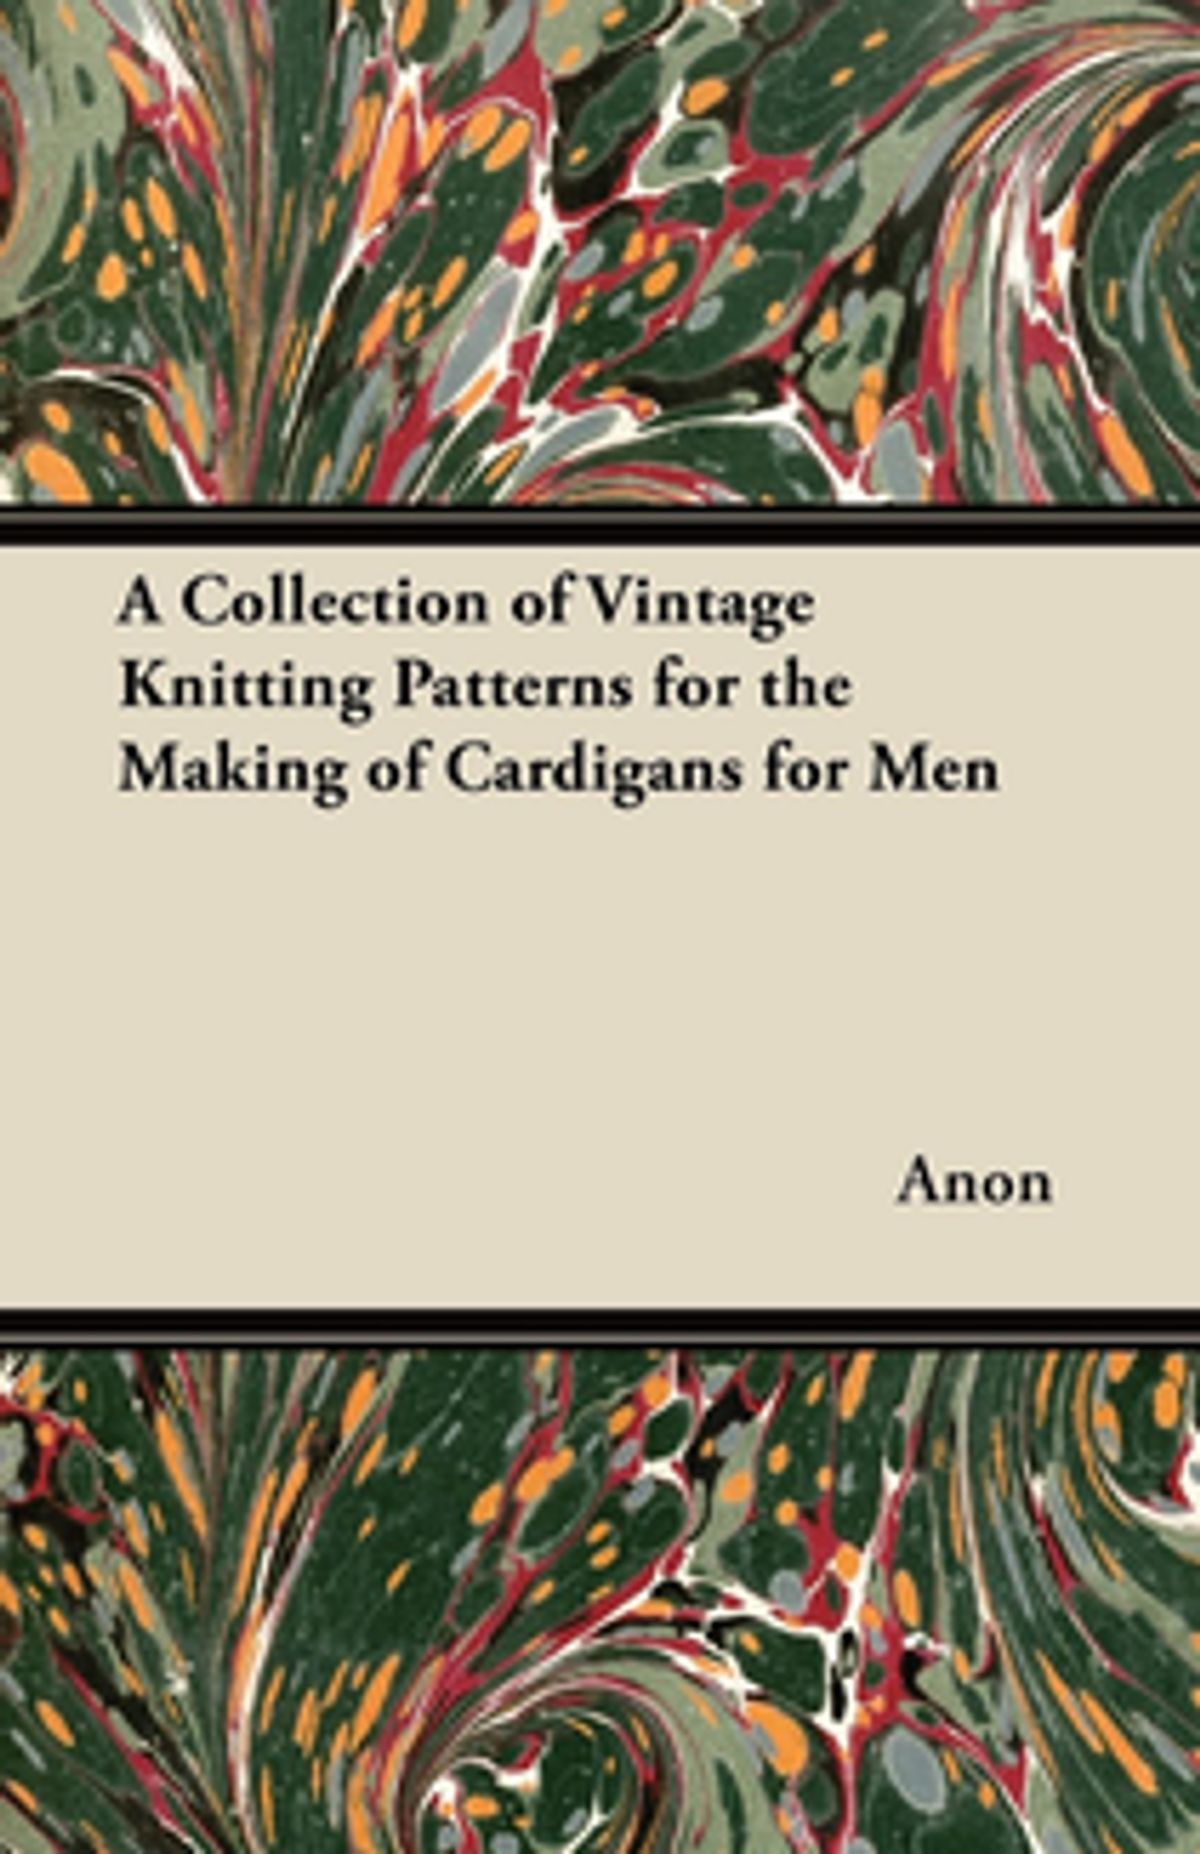 Knitting Patterns A Collection Of Vintage Knitting Patterns For The Making Of Cardigans For Men Ebook Anon Rakuten Kobo